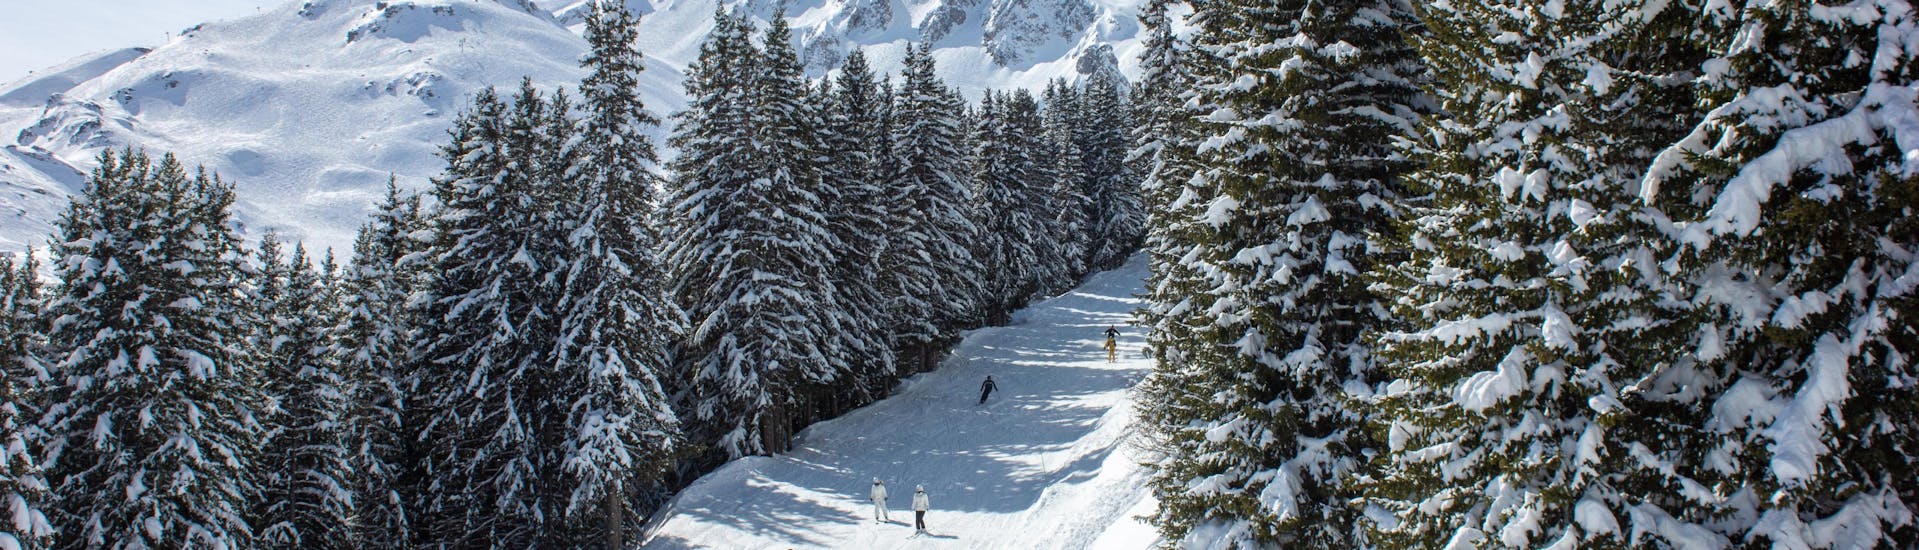 Gente disfruta esquiando en la estación de esquí de Courchevel durante un dia soleado.